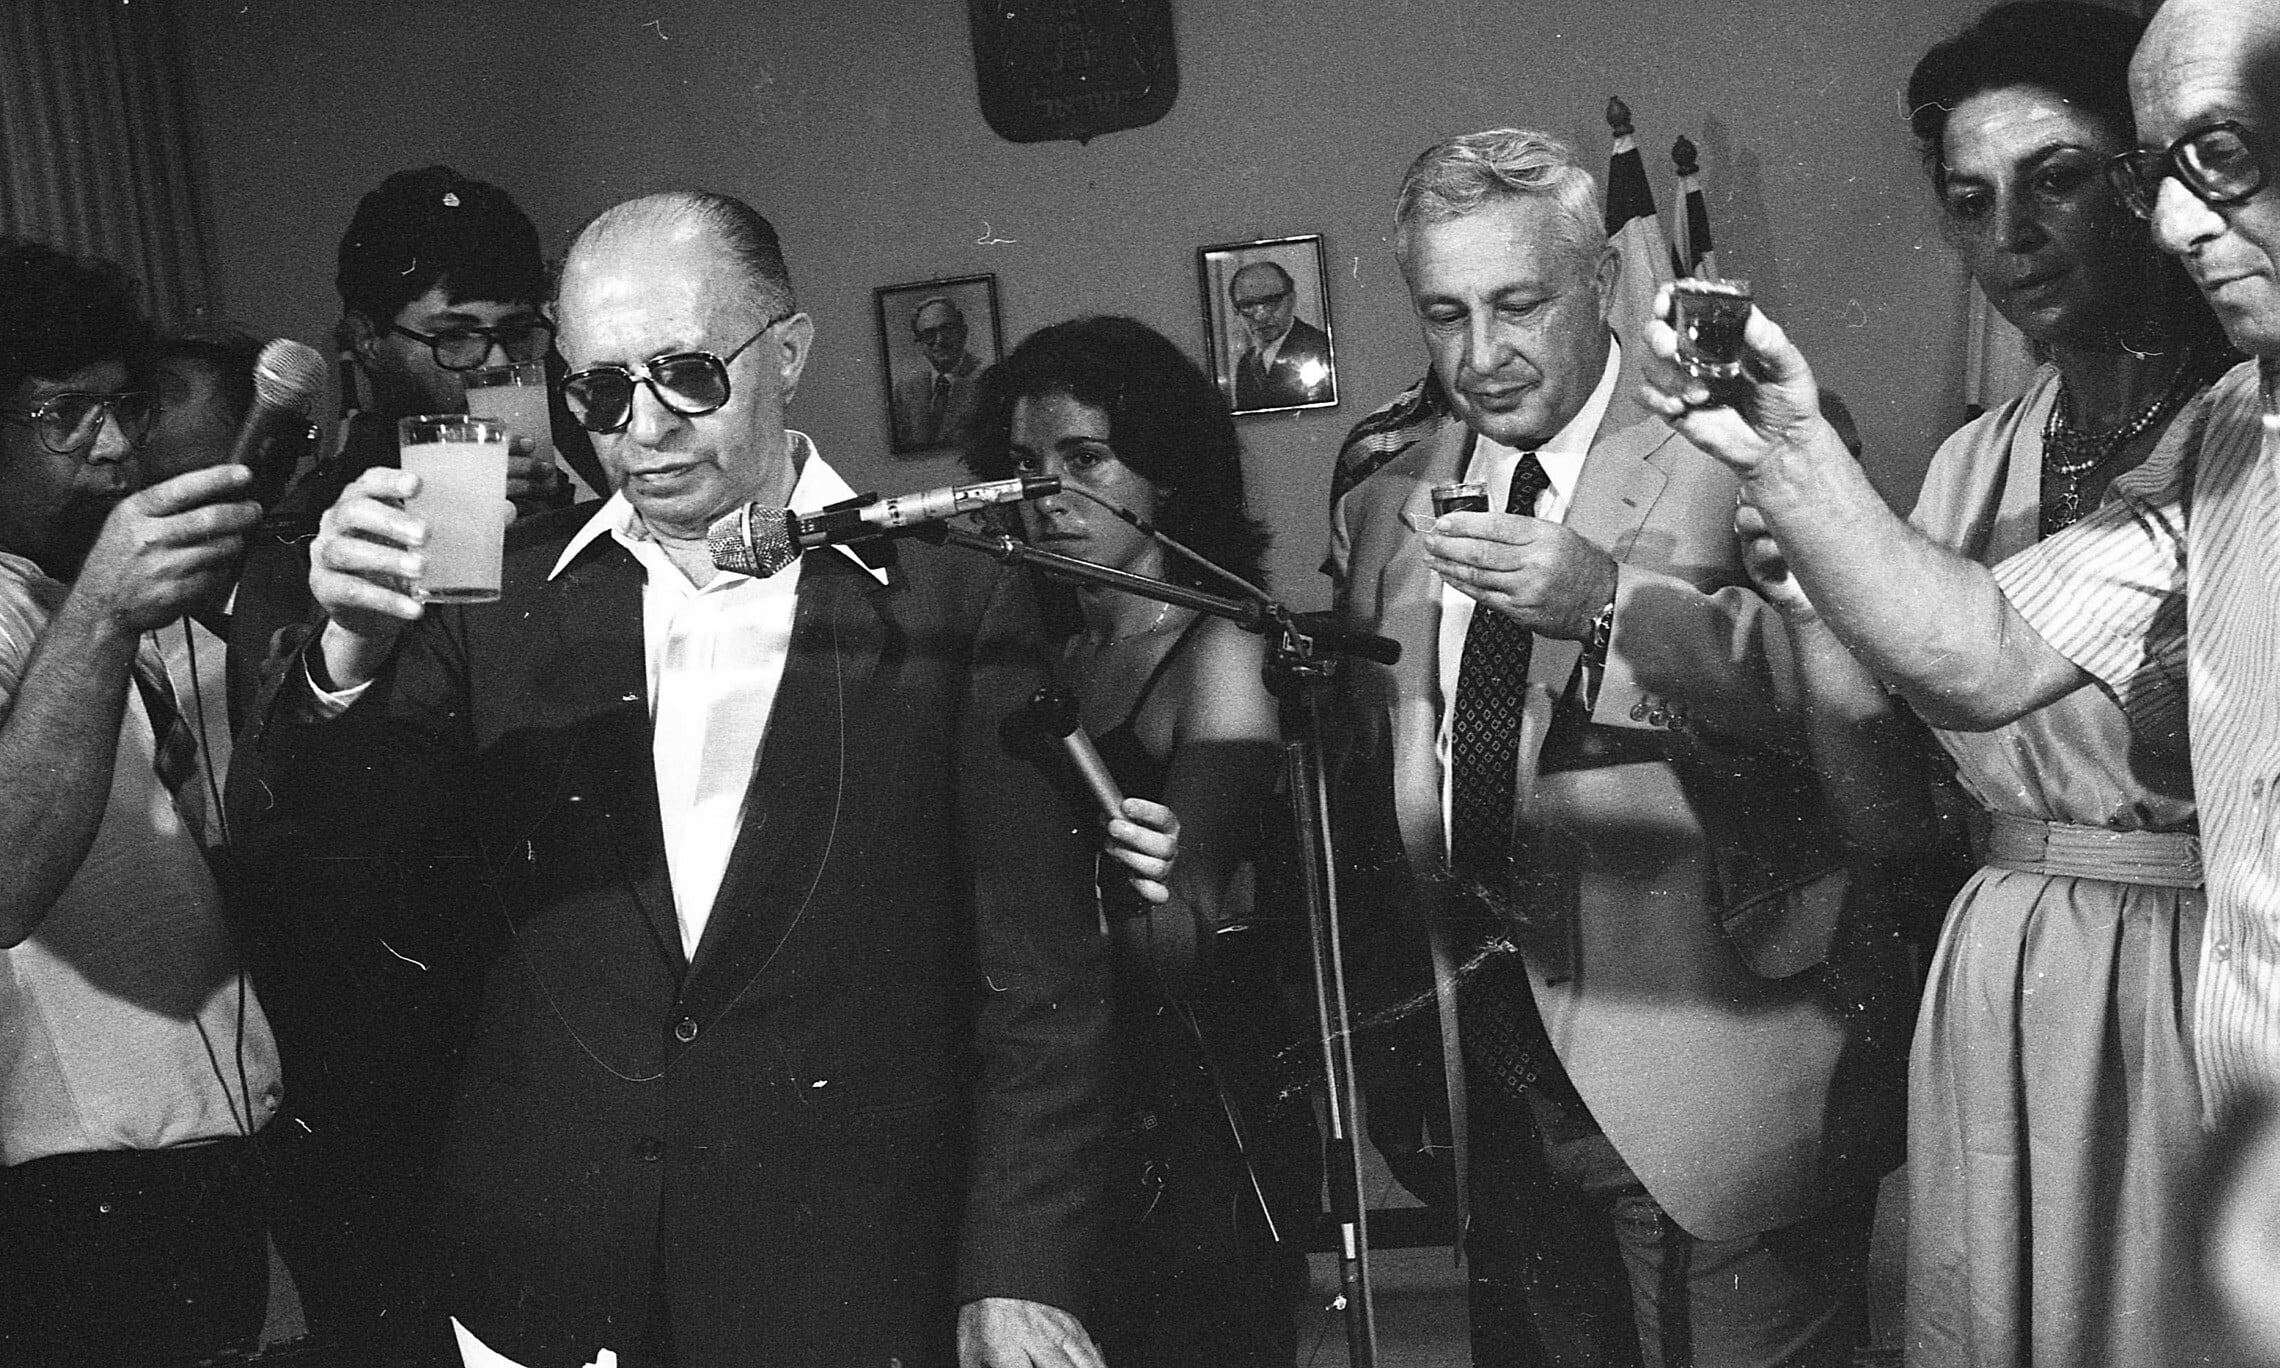 אריאל שרון בעת שמונה לשר הביטחון, עם ראש הממשלה מנחם בגין, 6 באוגוסט 1981 (צילום: ארכיון דן הדני, הספרייה הלאומית)